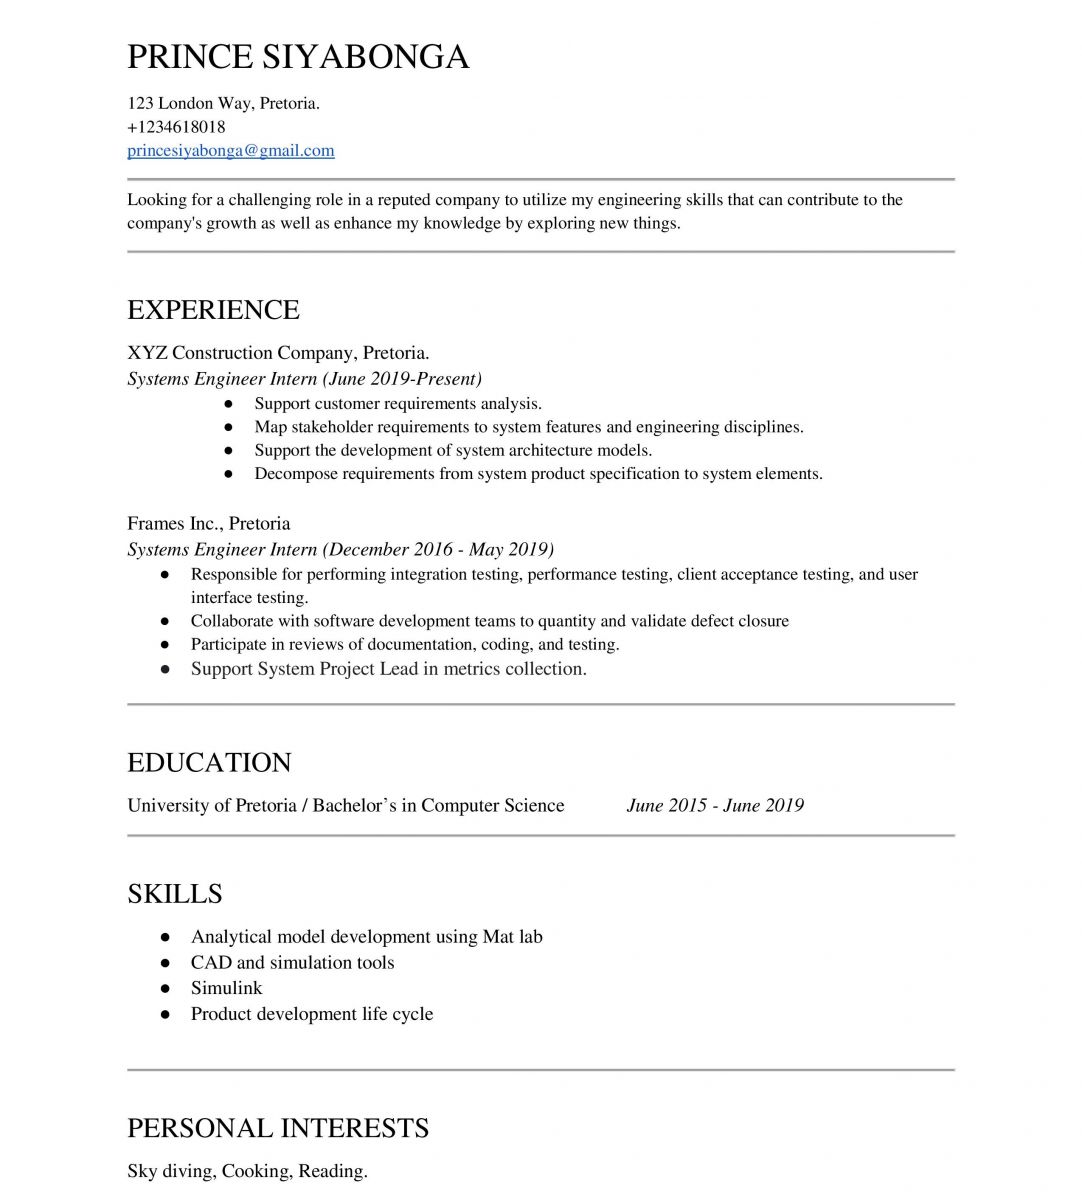 An image of an engineering internship CV template 